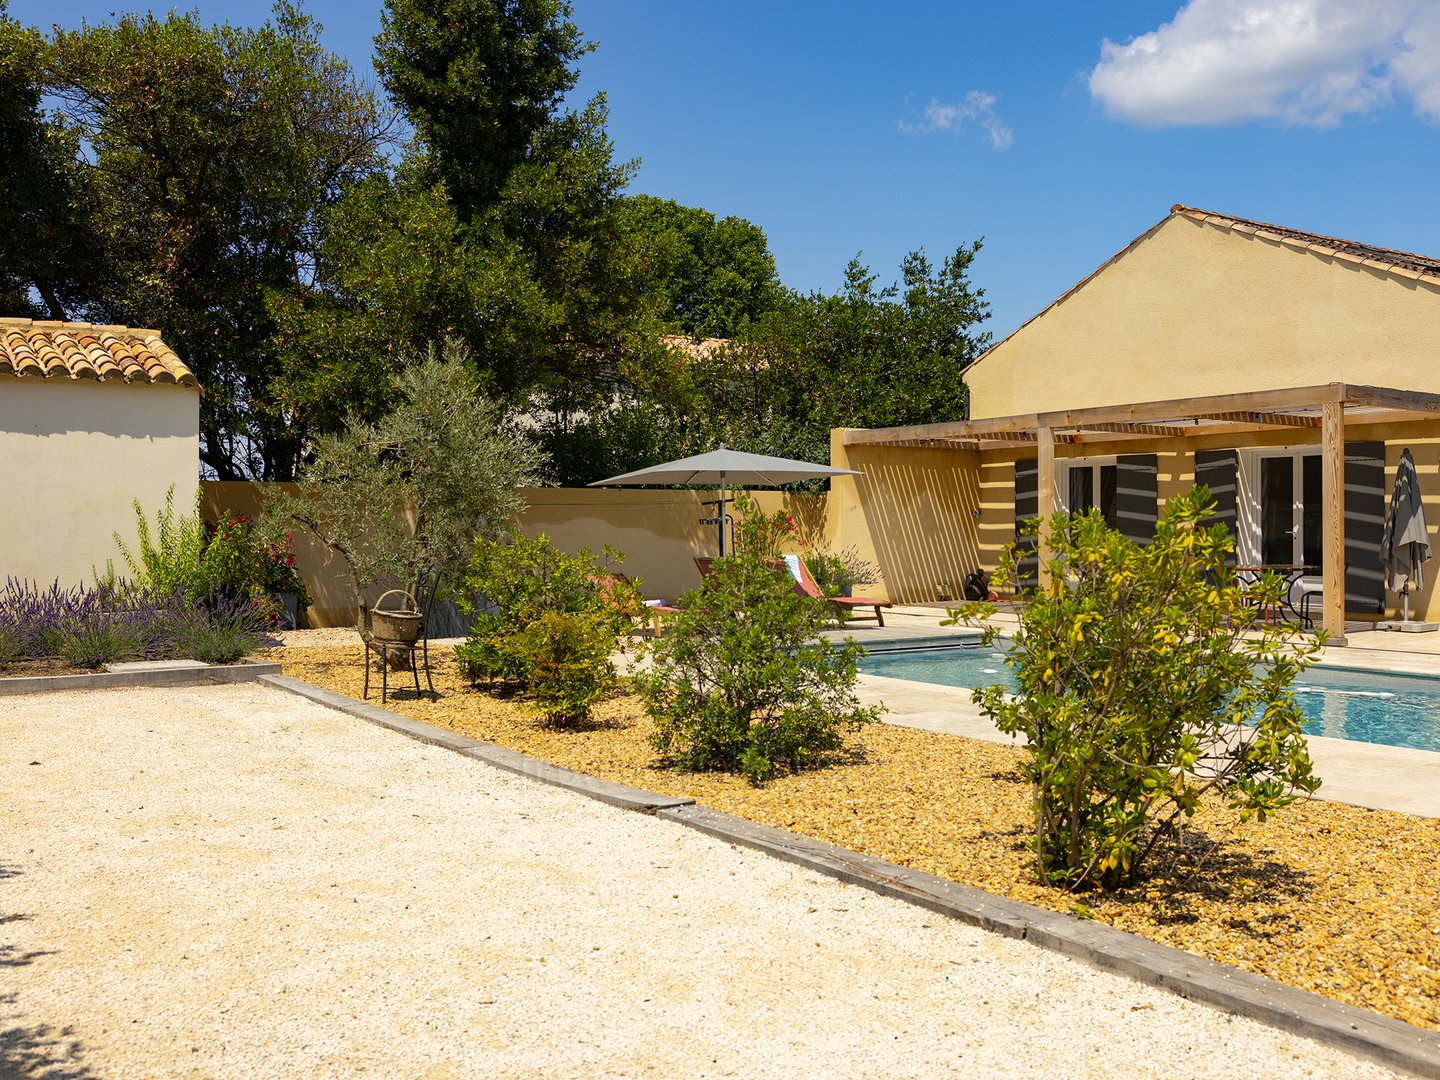 14 - La Maison de Village: Villa: Exterior - Uitzicht op het gastenverblijf